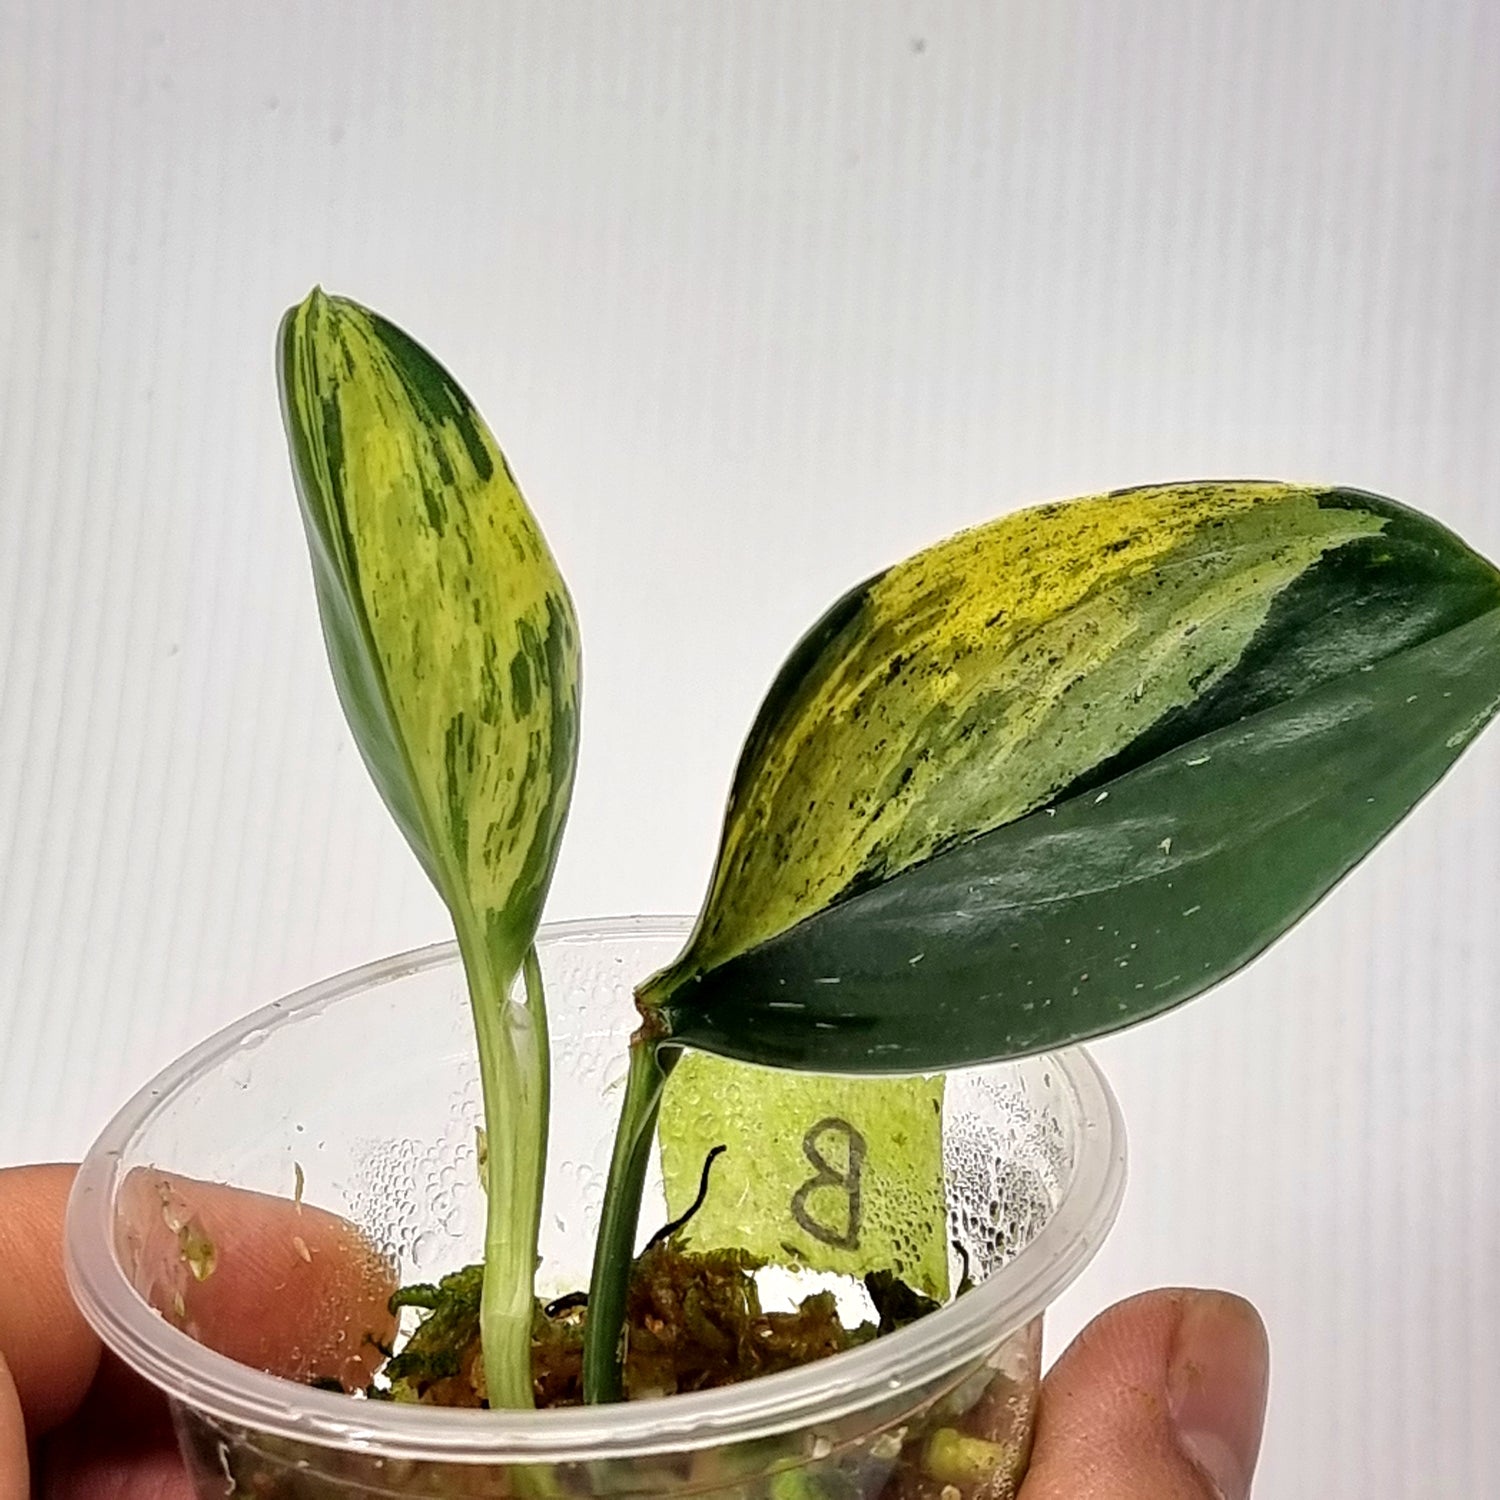 rare Scindapsus treubii Dark form Aurea Variegated for sale in Perth Australia